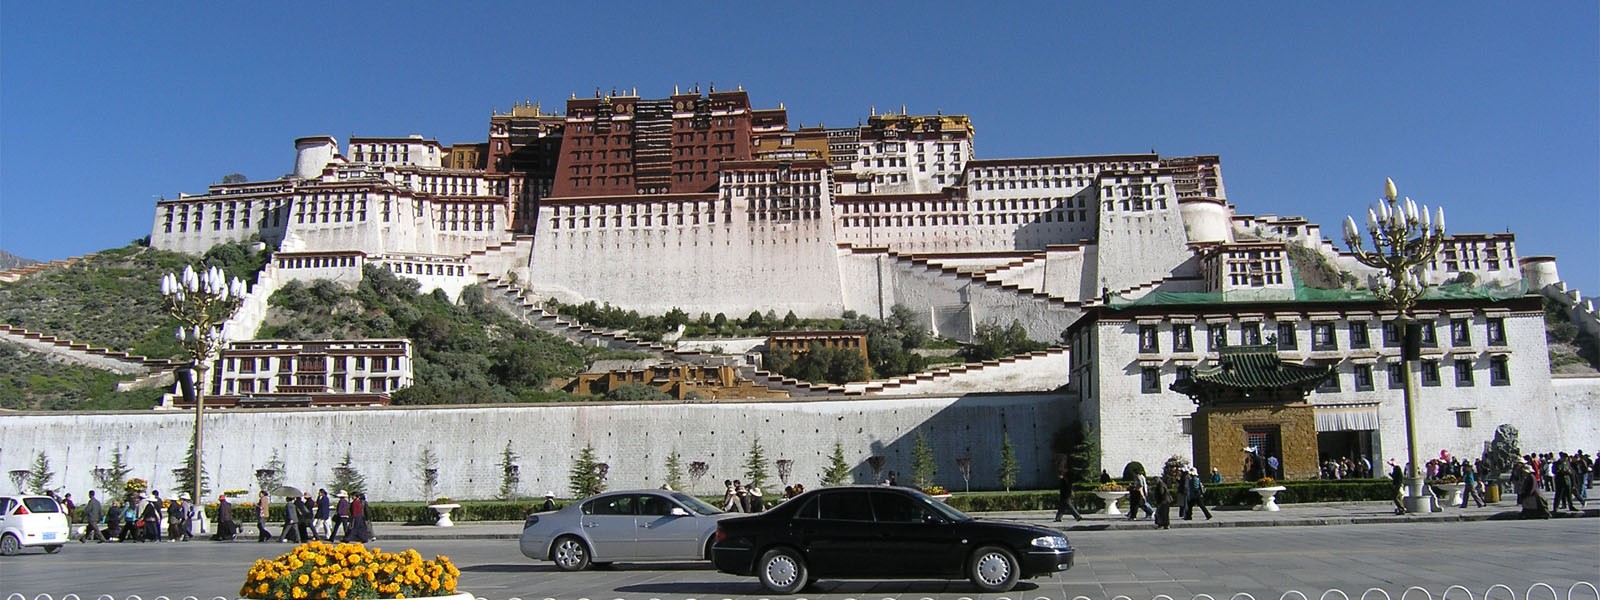 Ganden and Samye Monastery trekking